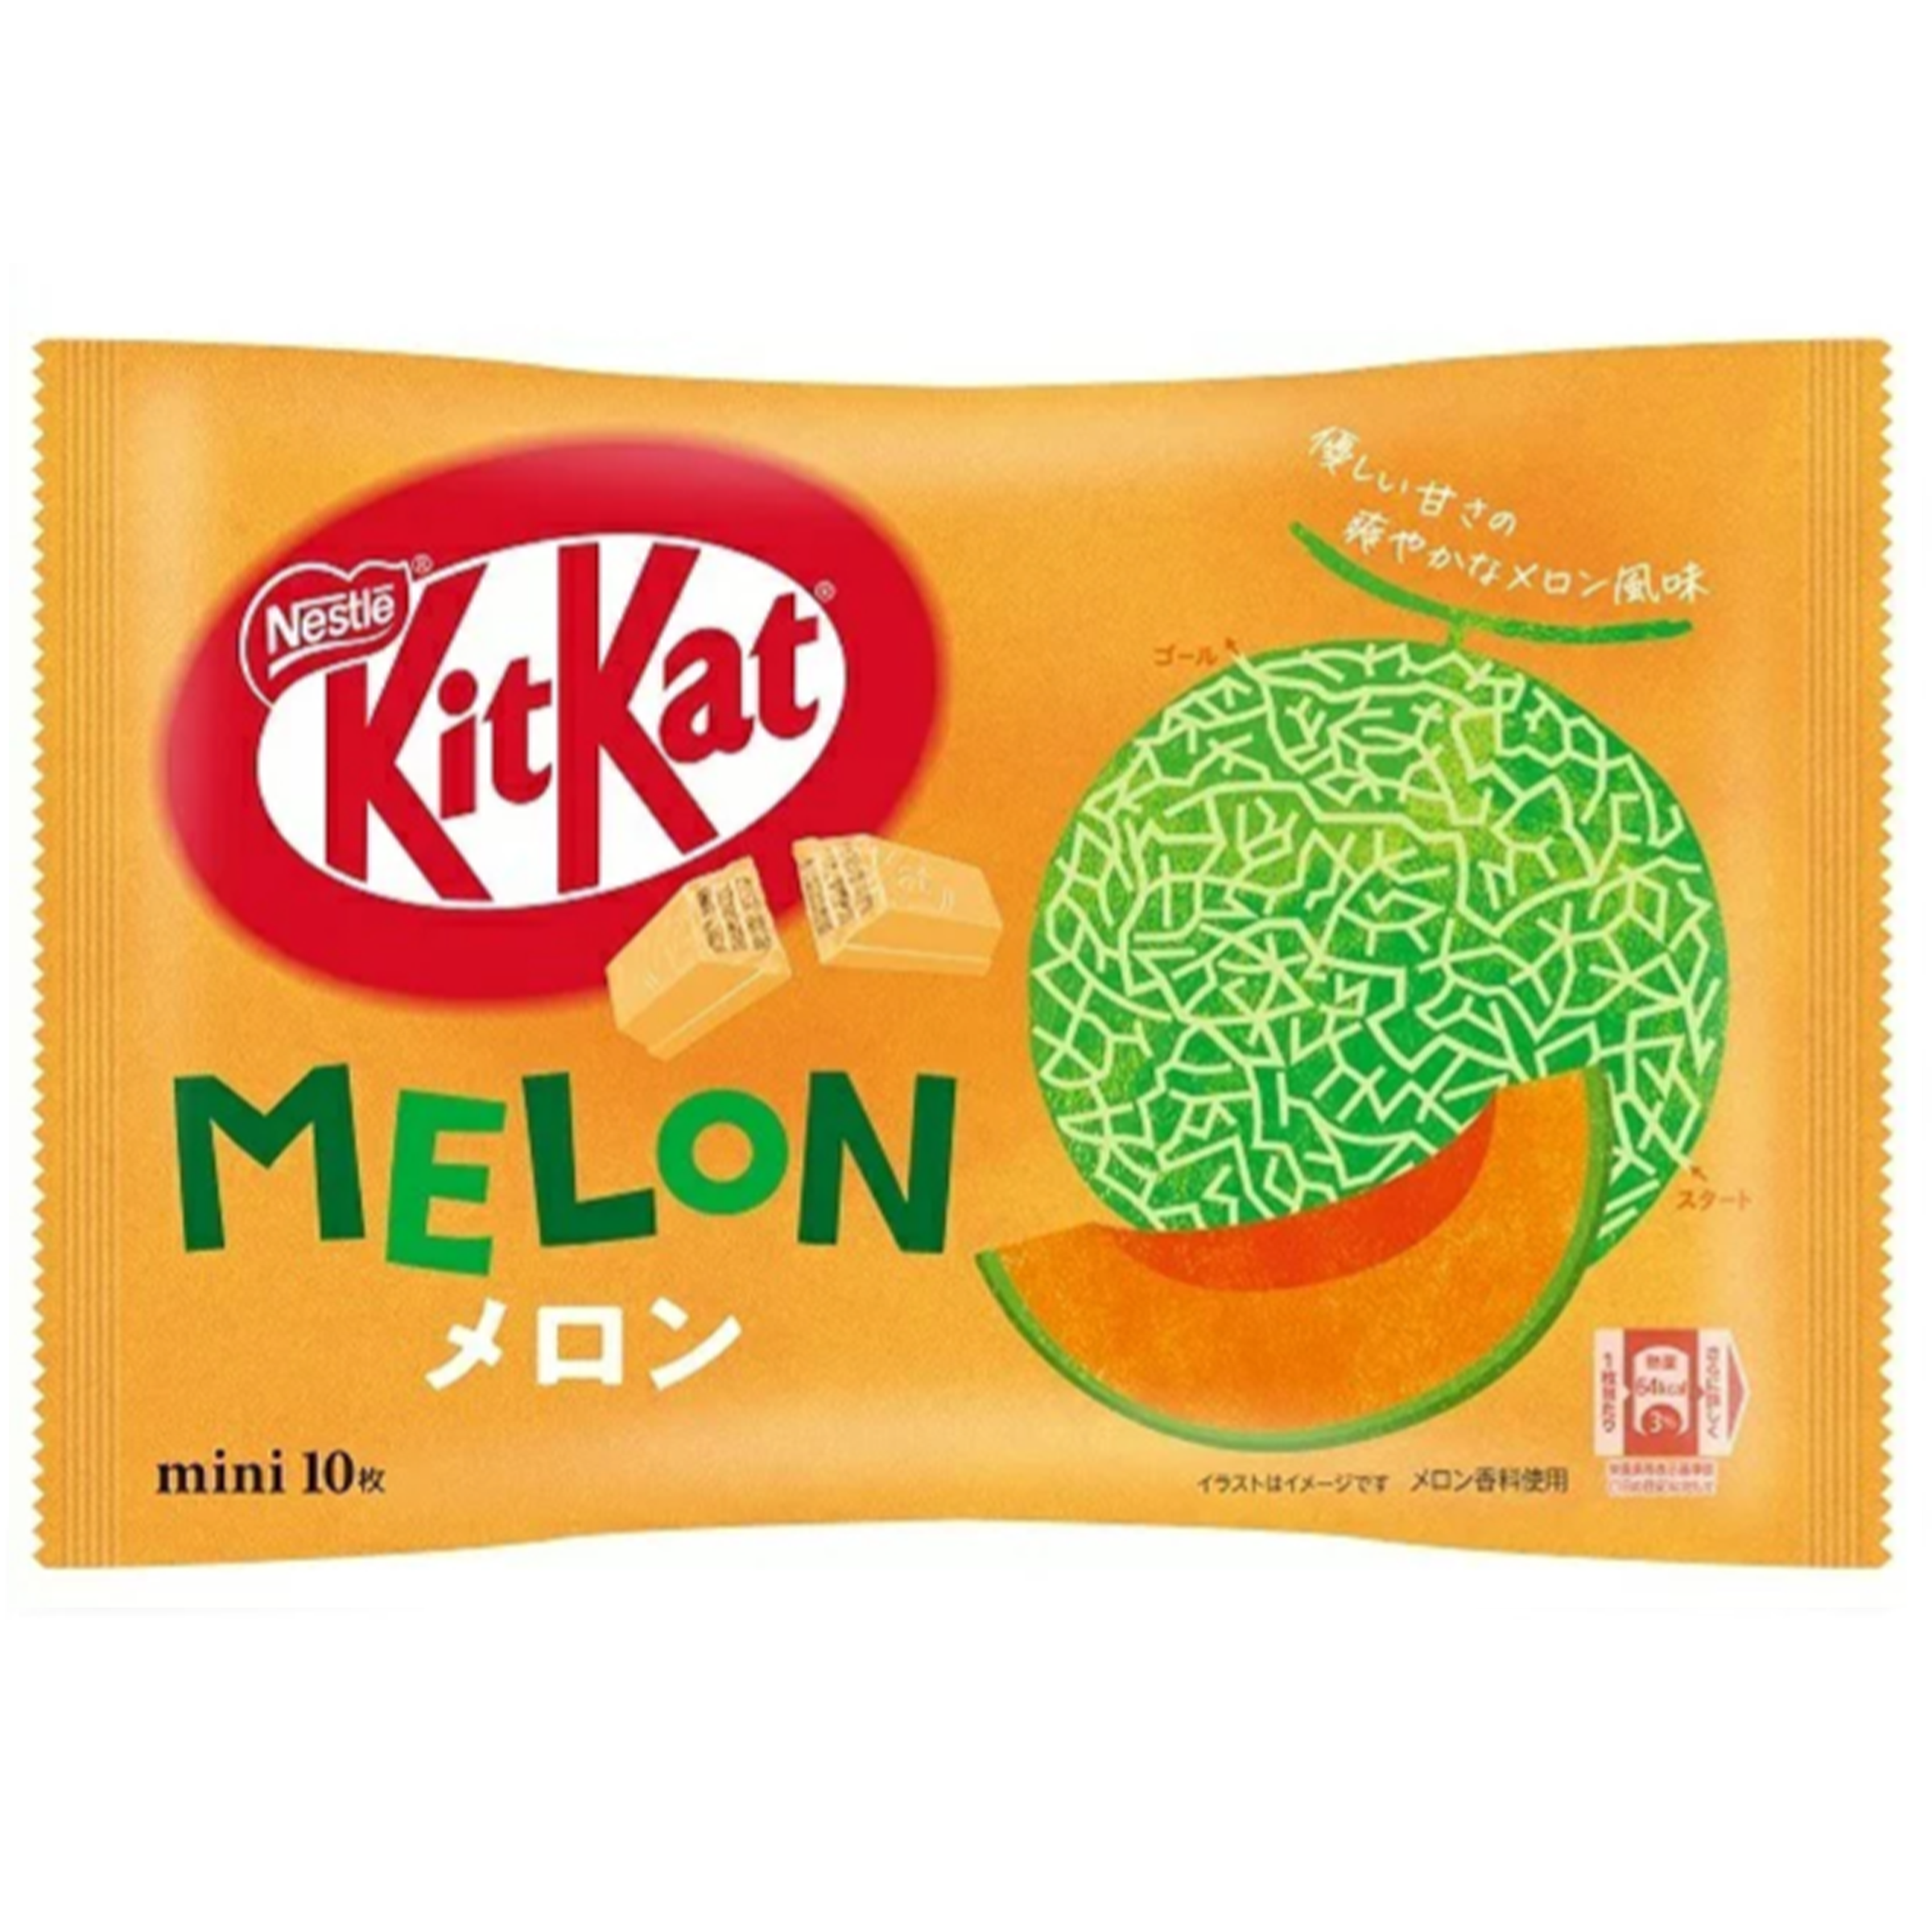 Kit Kat Melon (Japan)